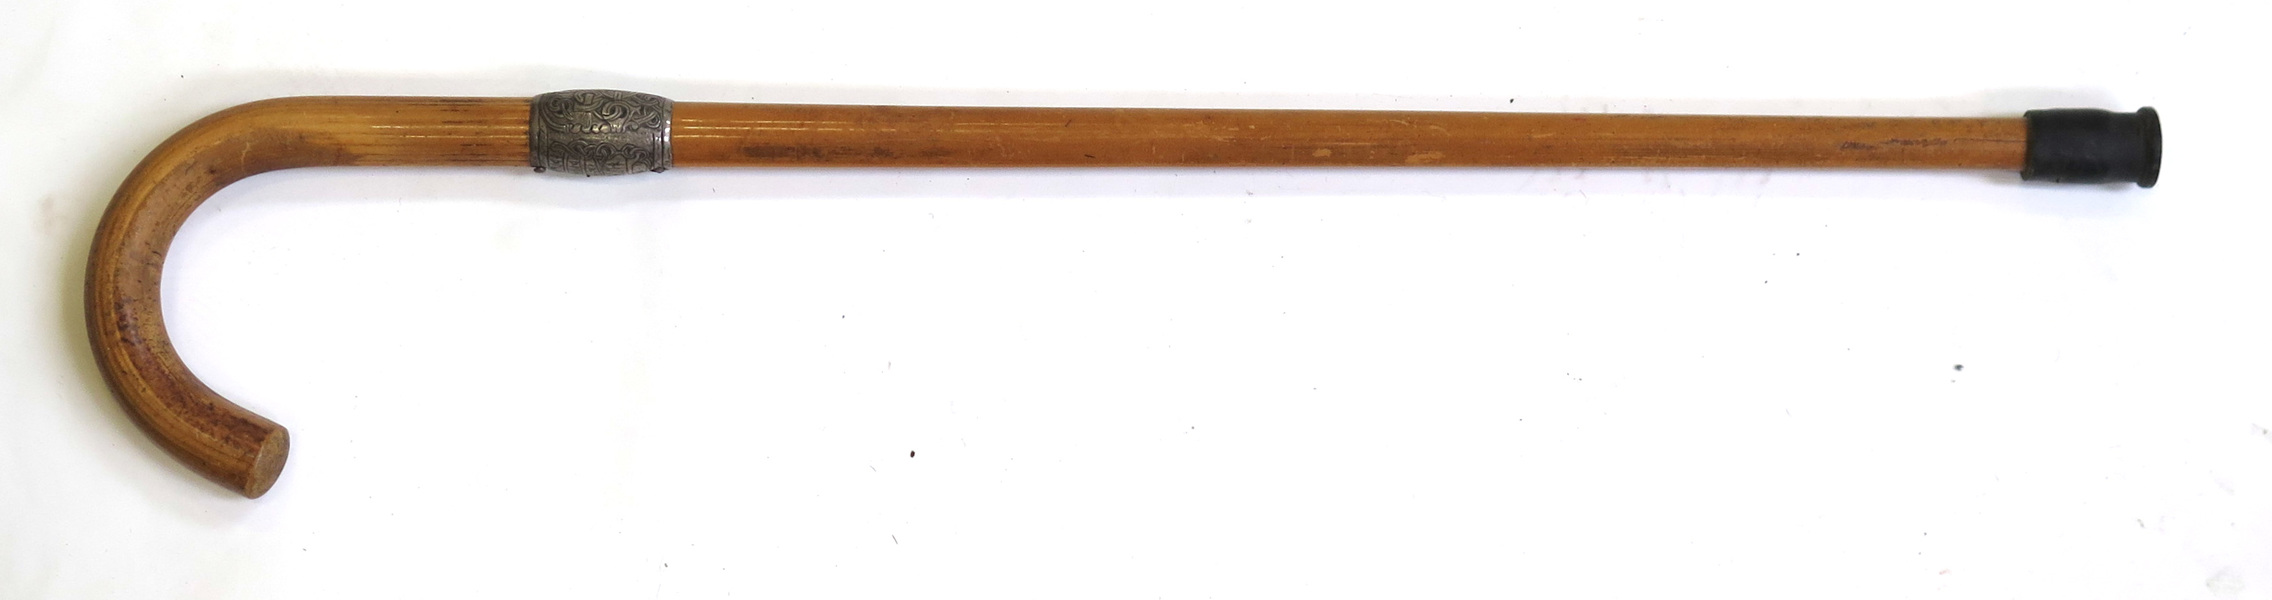 Käpp, bambu med silverbeslag, dekor av runor mm efter original på Jellingestenen,_14976a_lg.jpeg